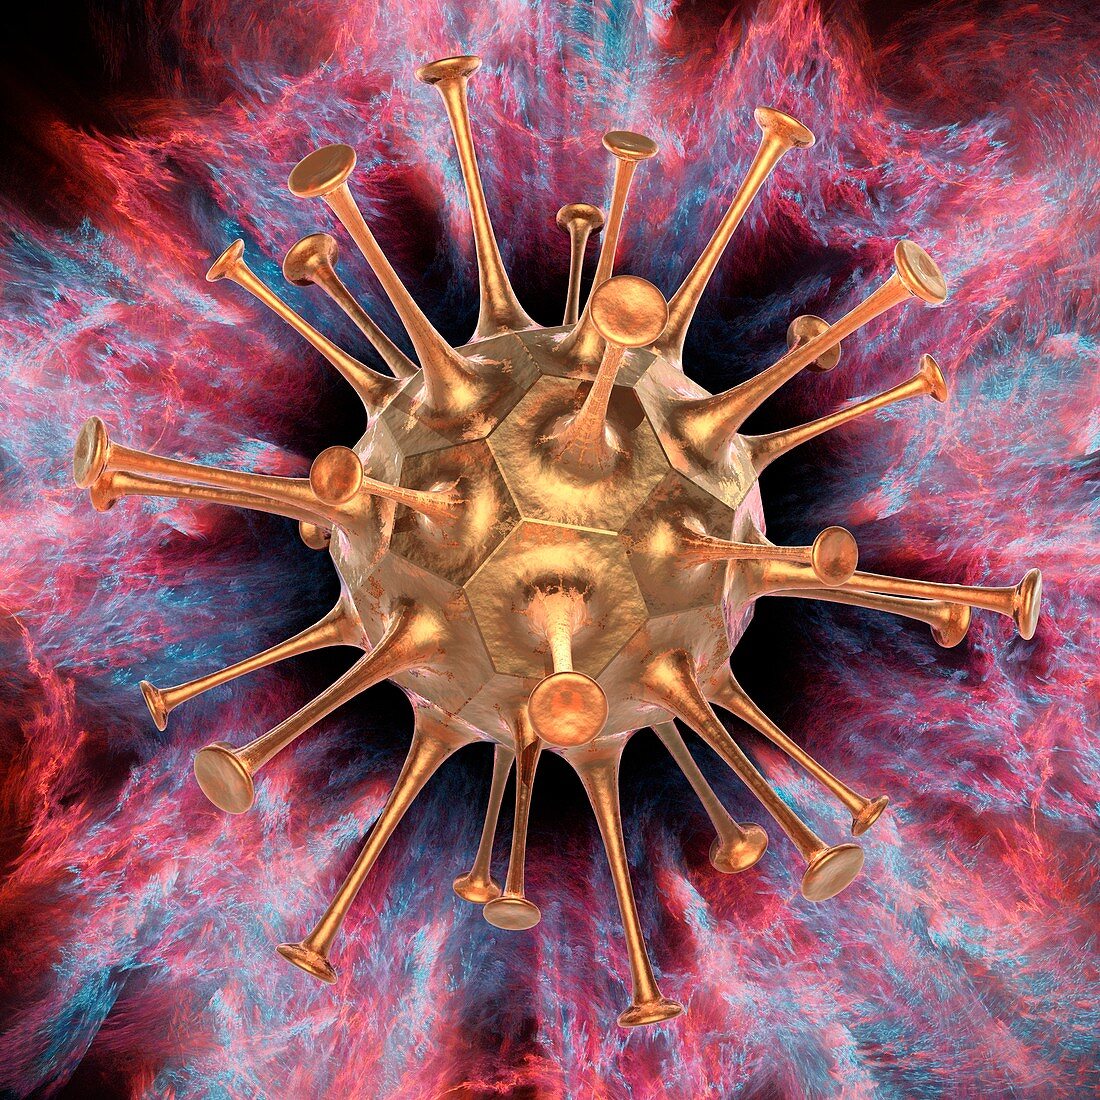 Artificial nano-virus